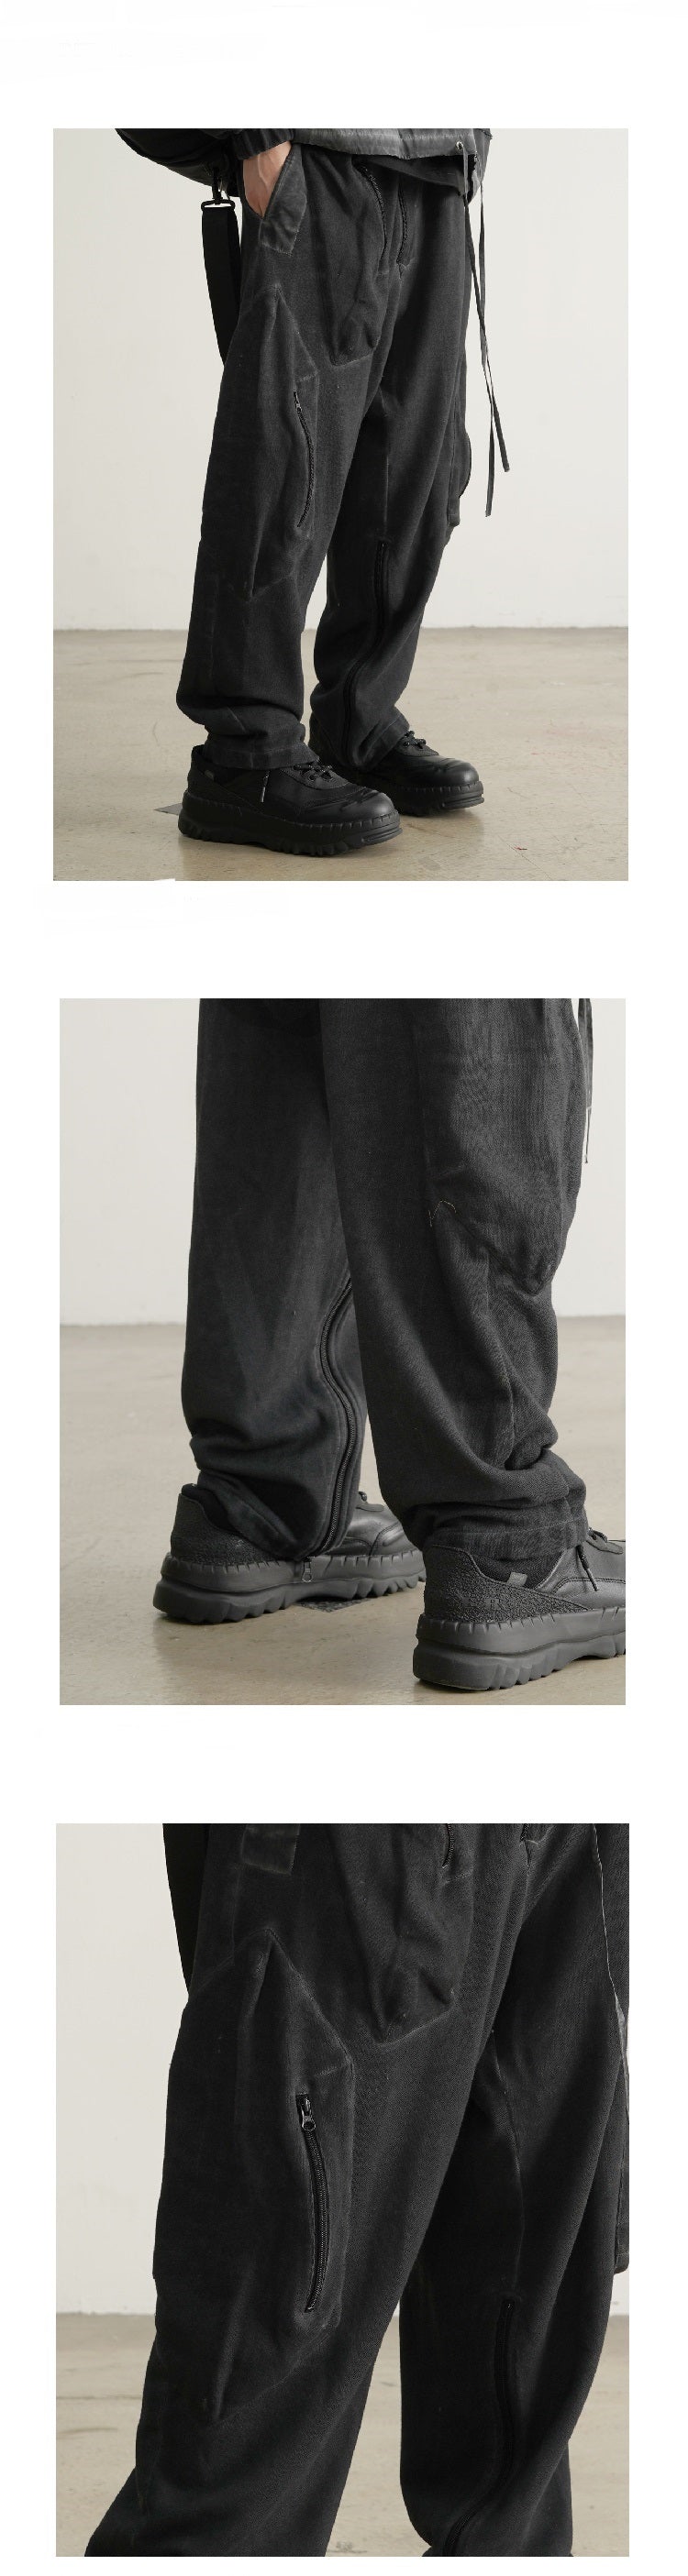 Dirty Dyed PMU Pants Zipper Trousers Jogger